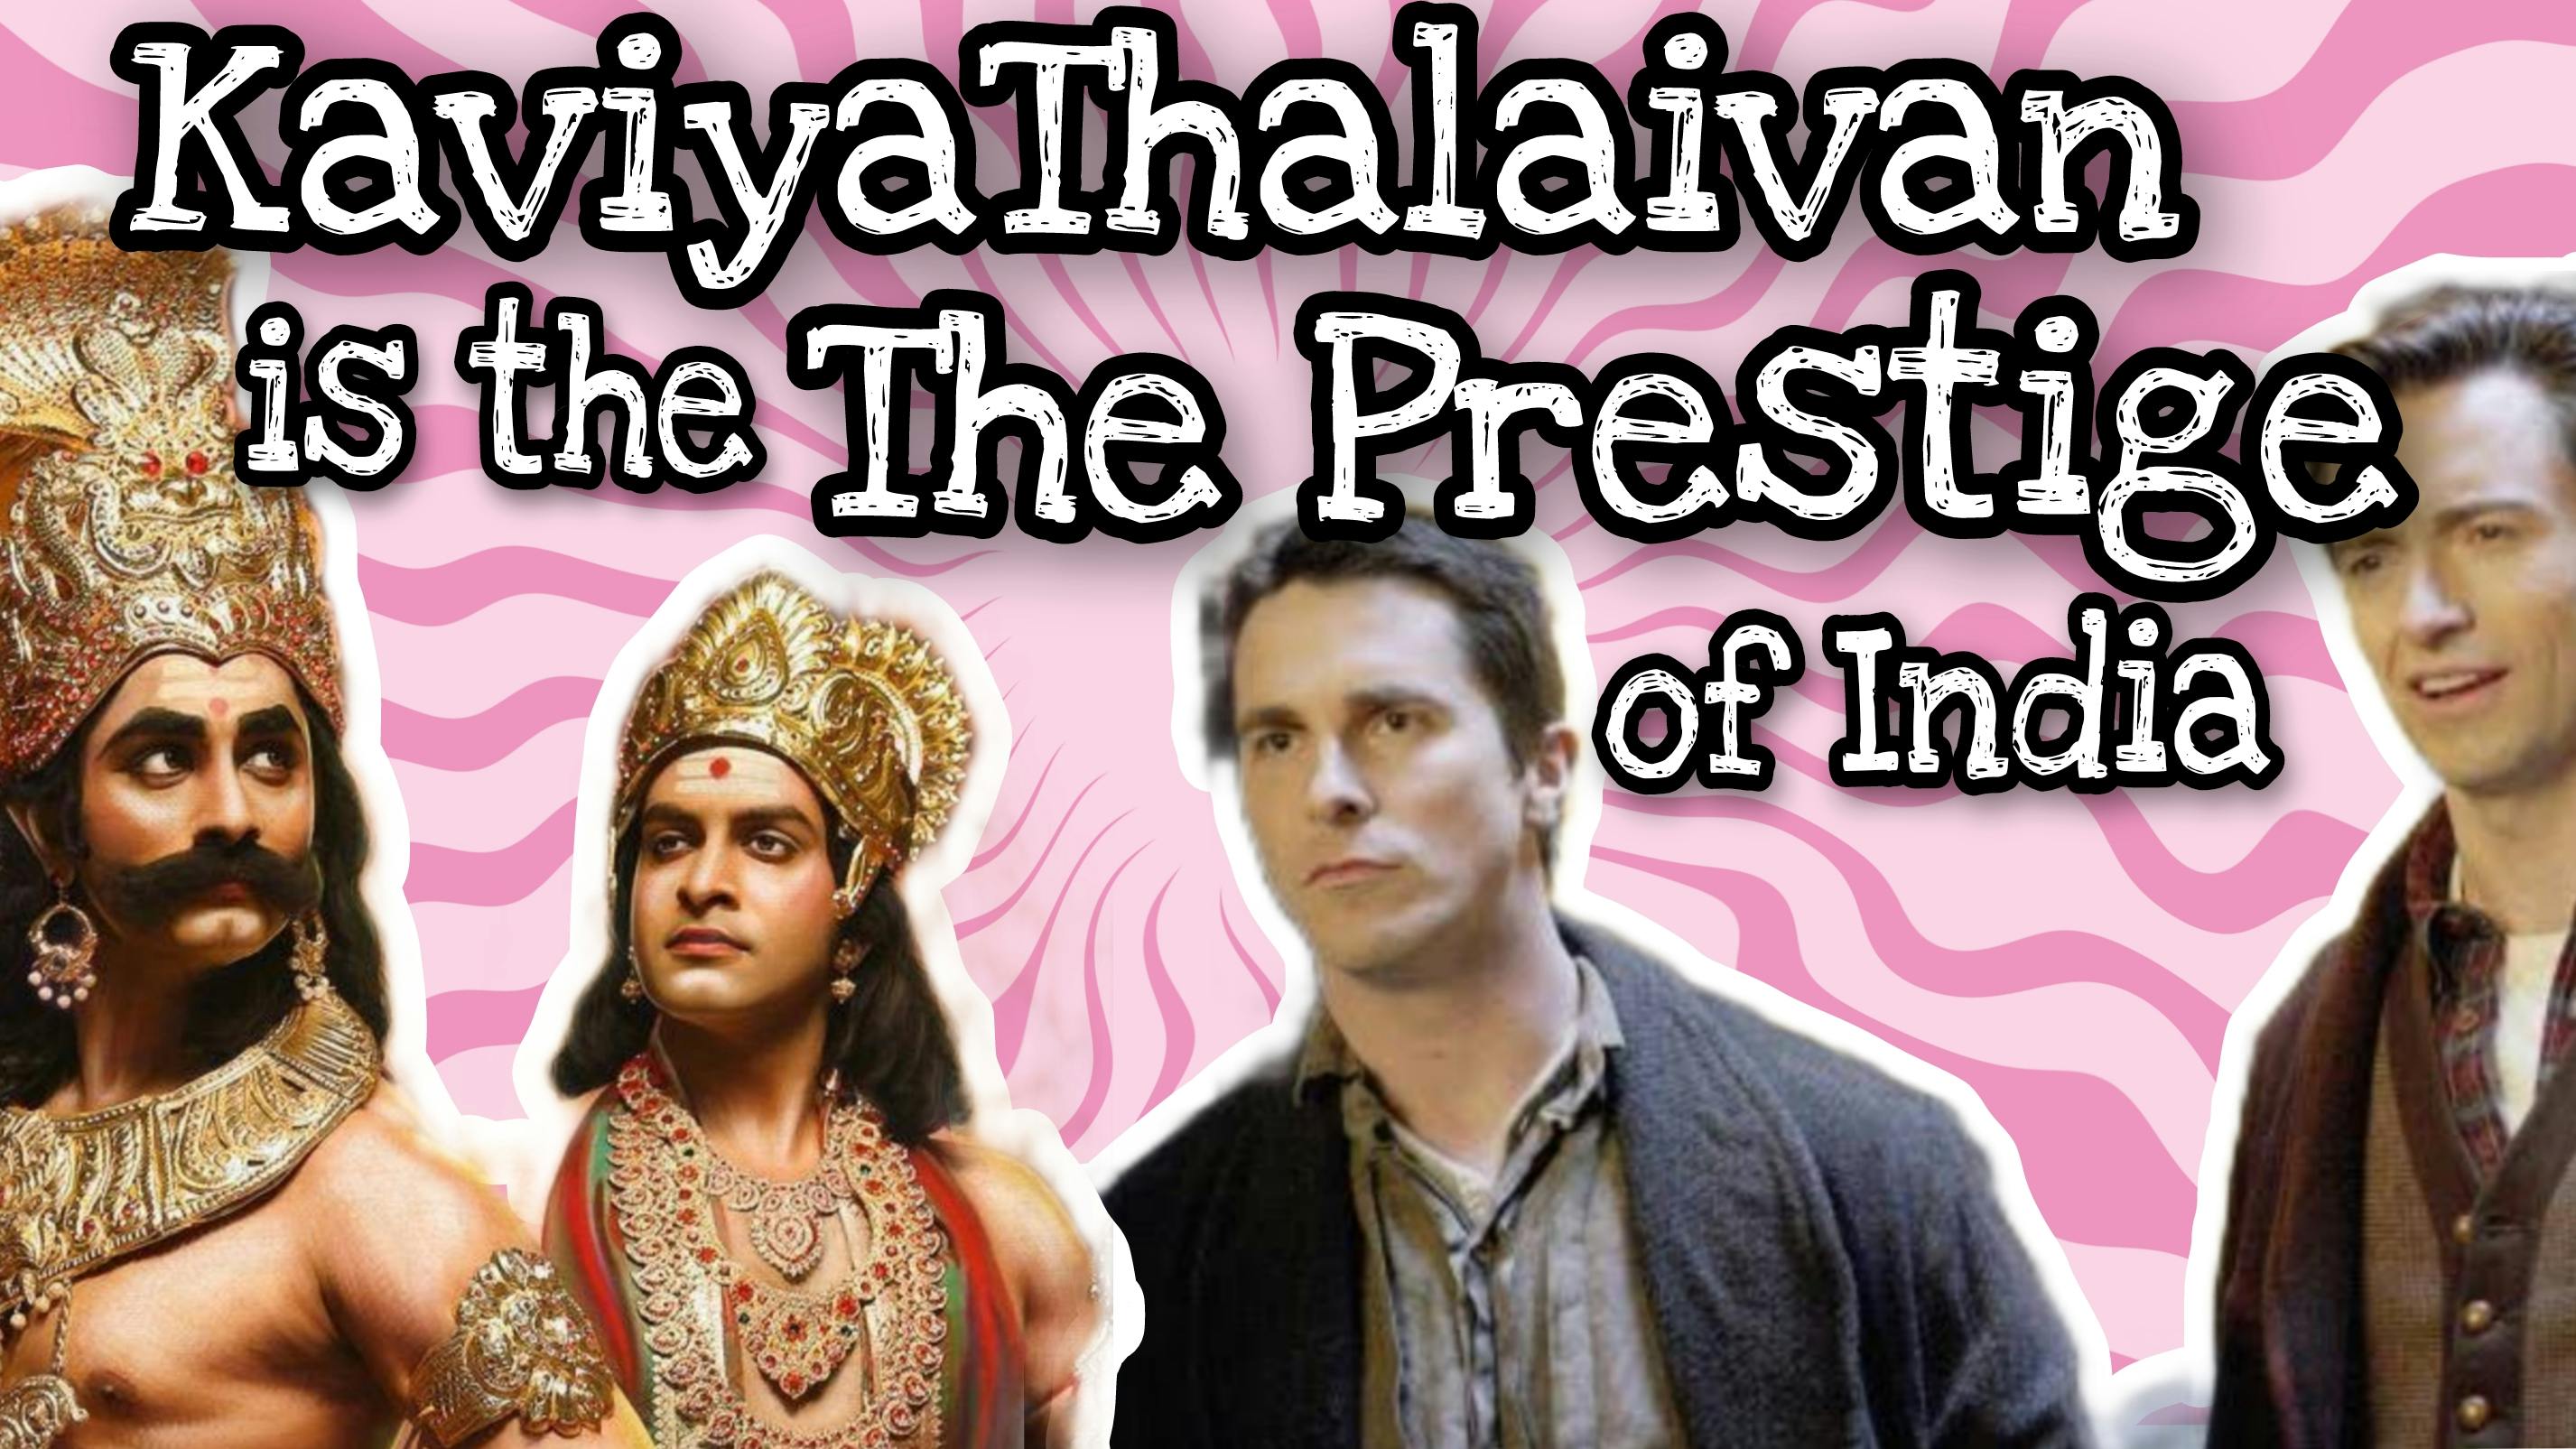 thumbnail image of Kaviyathalaivan is the The Prestige of India